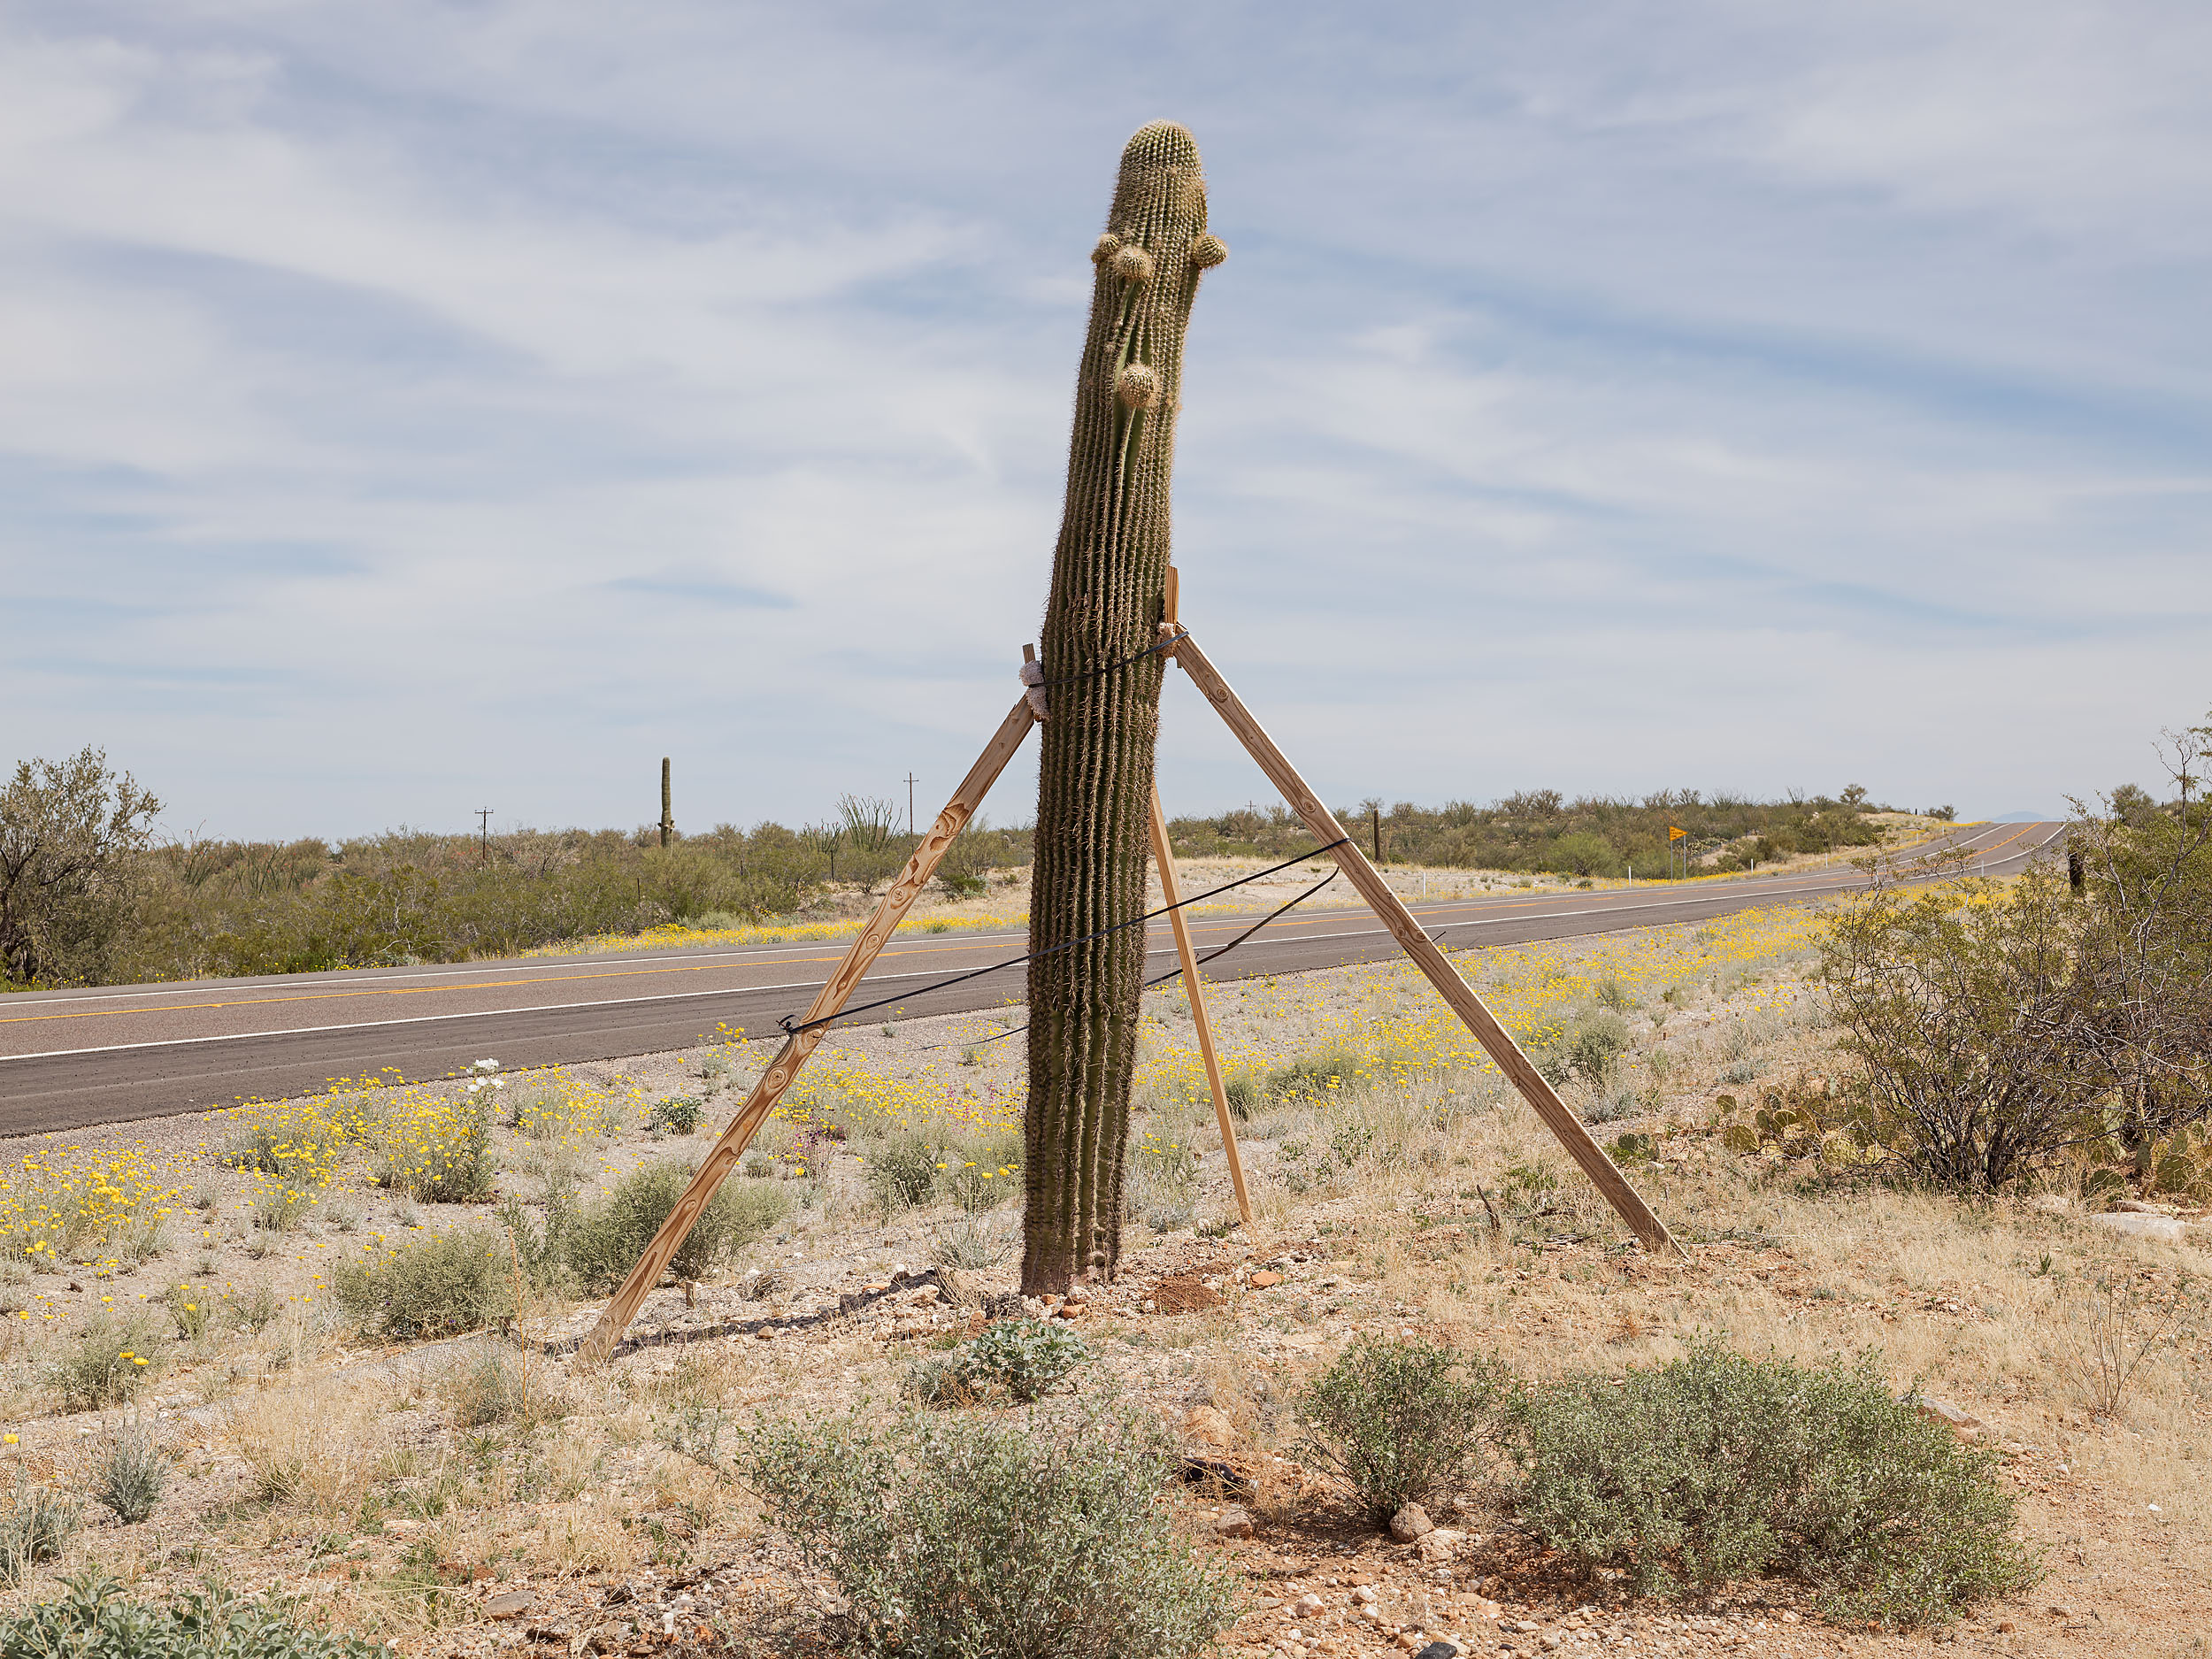 Braced saguaro cactus along AZ-86 - Sells, AZ